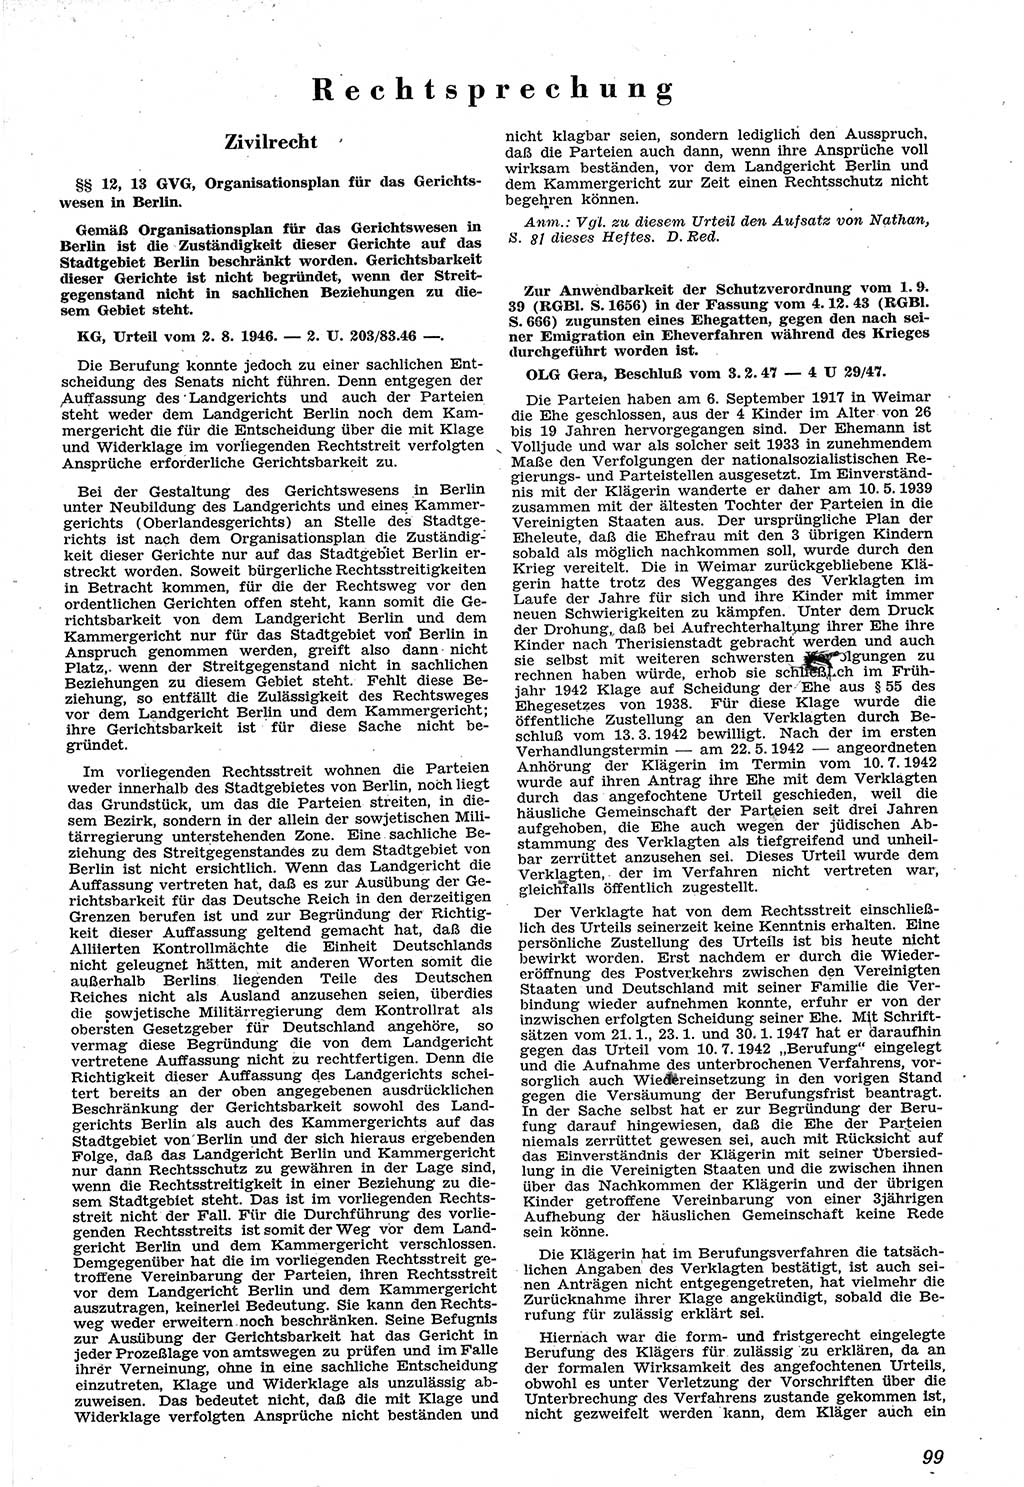 Neue Justiz (NJ), Zeitschrift für Recht und Rechtswissenschaft [Sowjetische Besatzungszone (SBZ) Deutschland], 1. Jahrgang 1947, Seite 99 (NJ SBZ Dtl. 1947, S. 99)